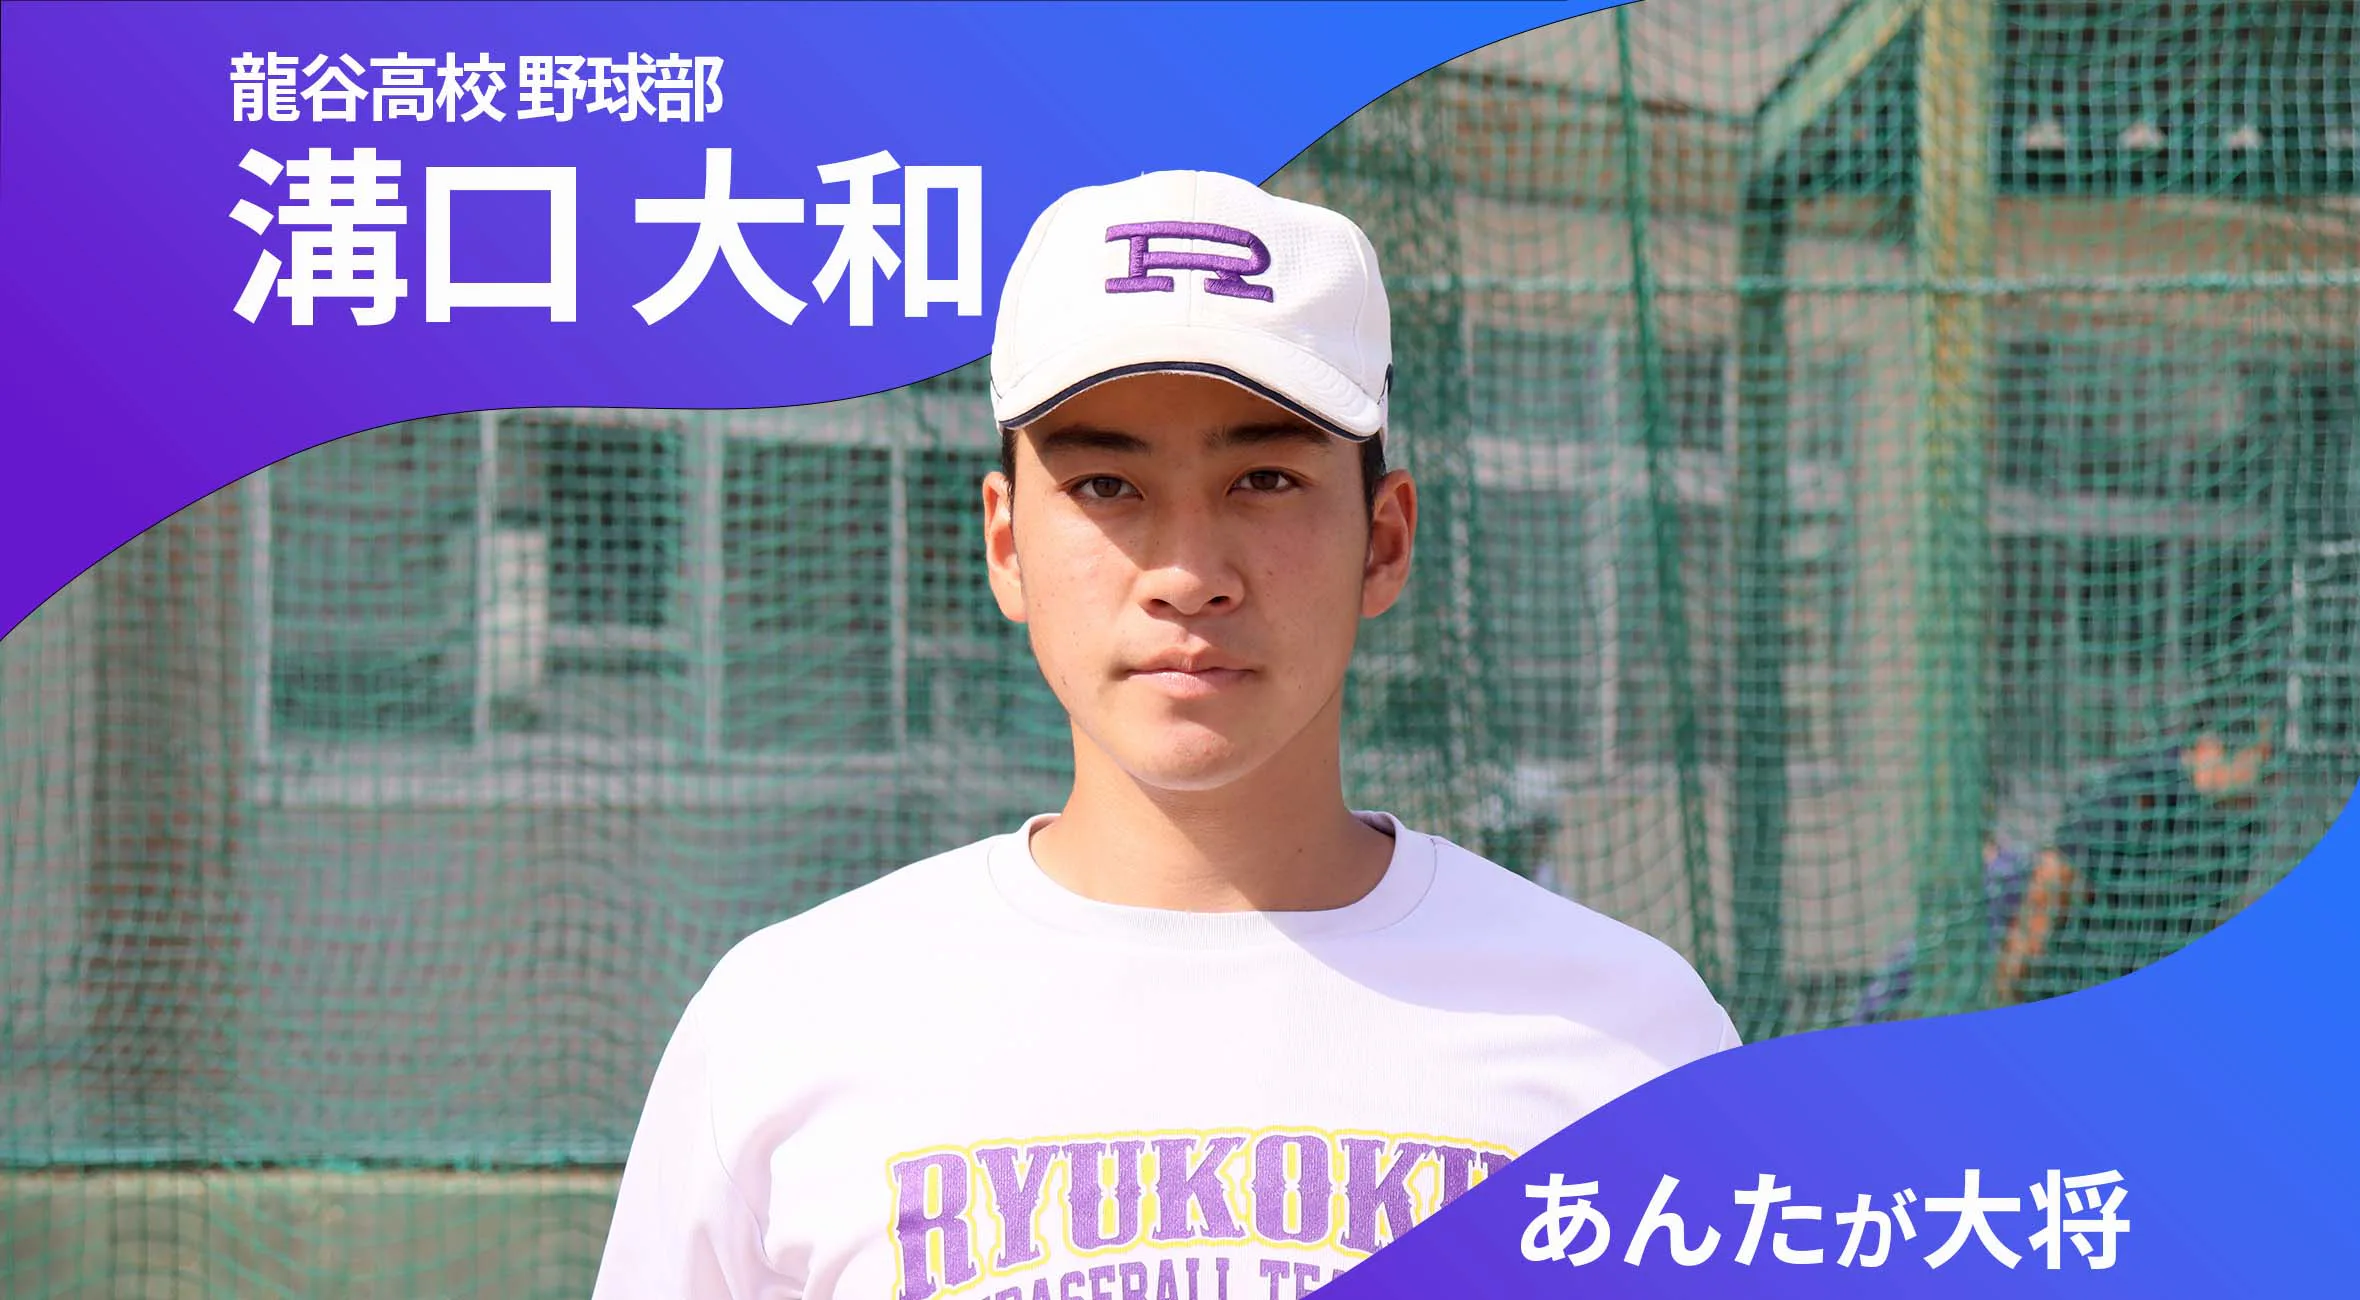 あんたが大将 龍谷高校野球部 主将 溝口大和 選手（3年）「チームが勝つためにキャプテンとしてできることは」